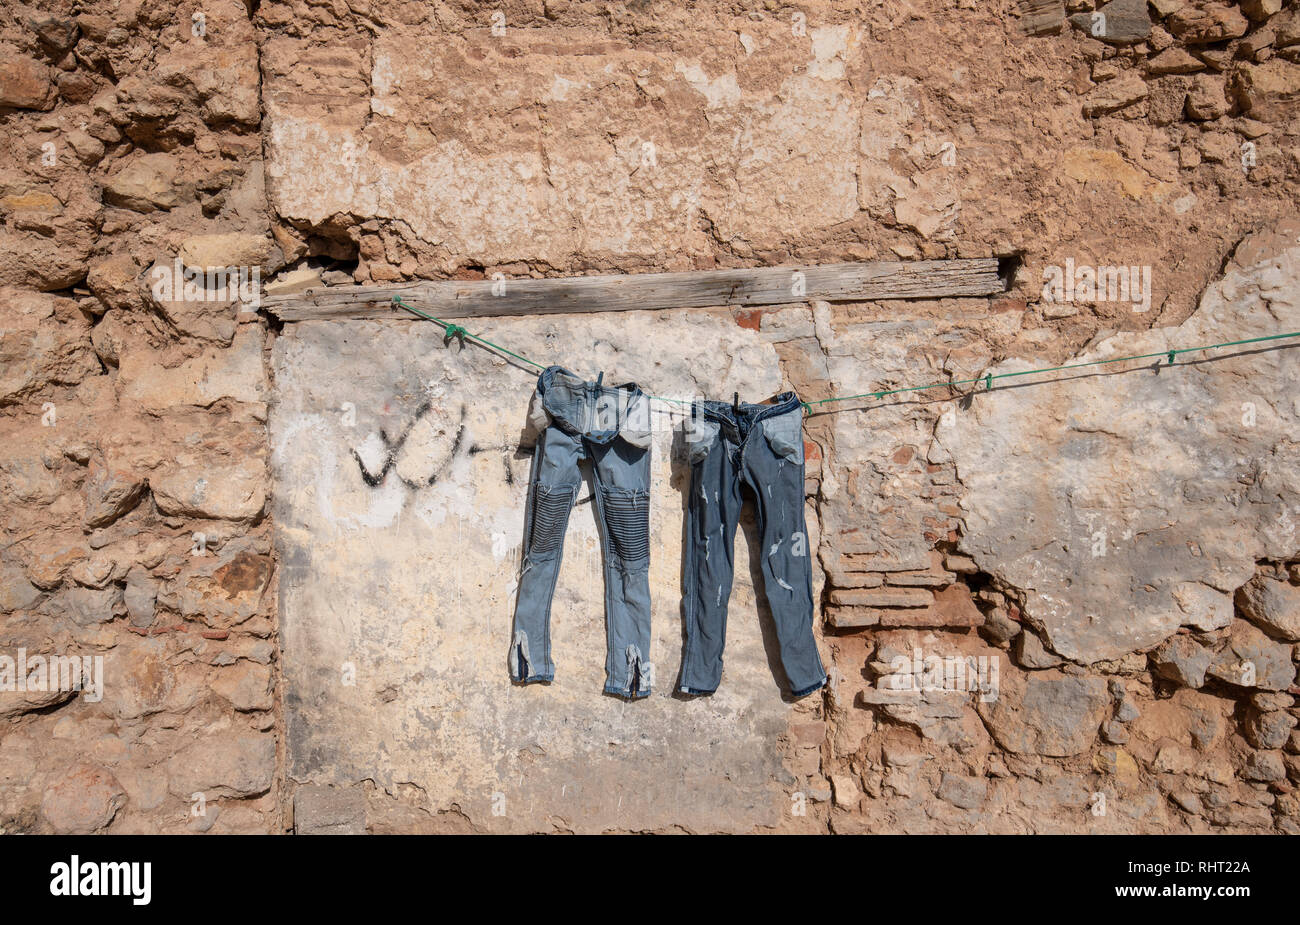 Vêtements en jeans lavés laissés sécher dans la rue dans la vieille ville d'El Jadida, au Maroc. Banque D'Images